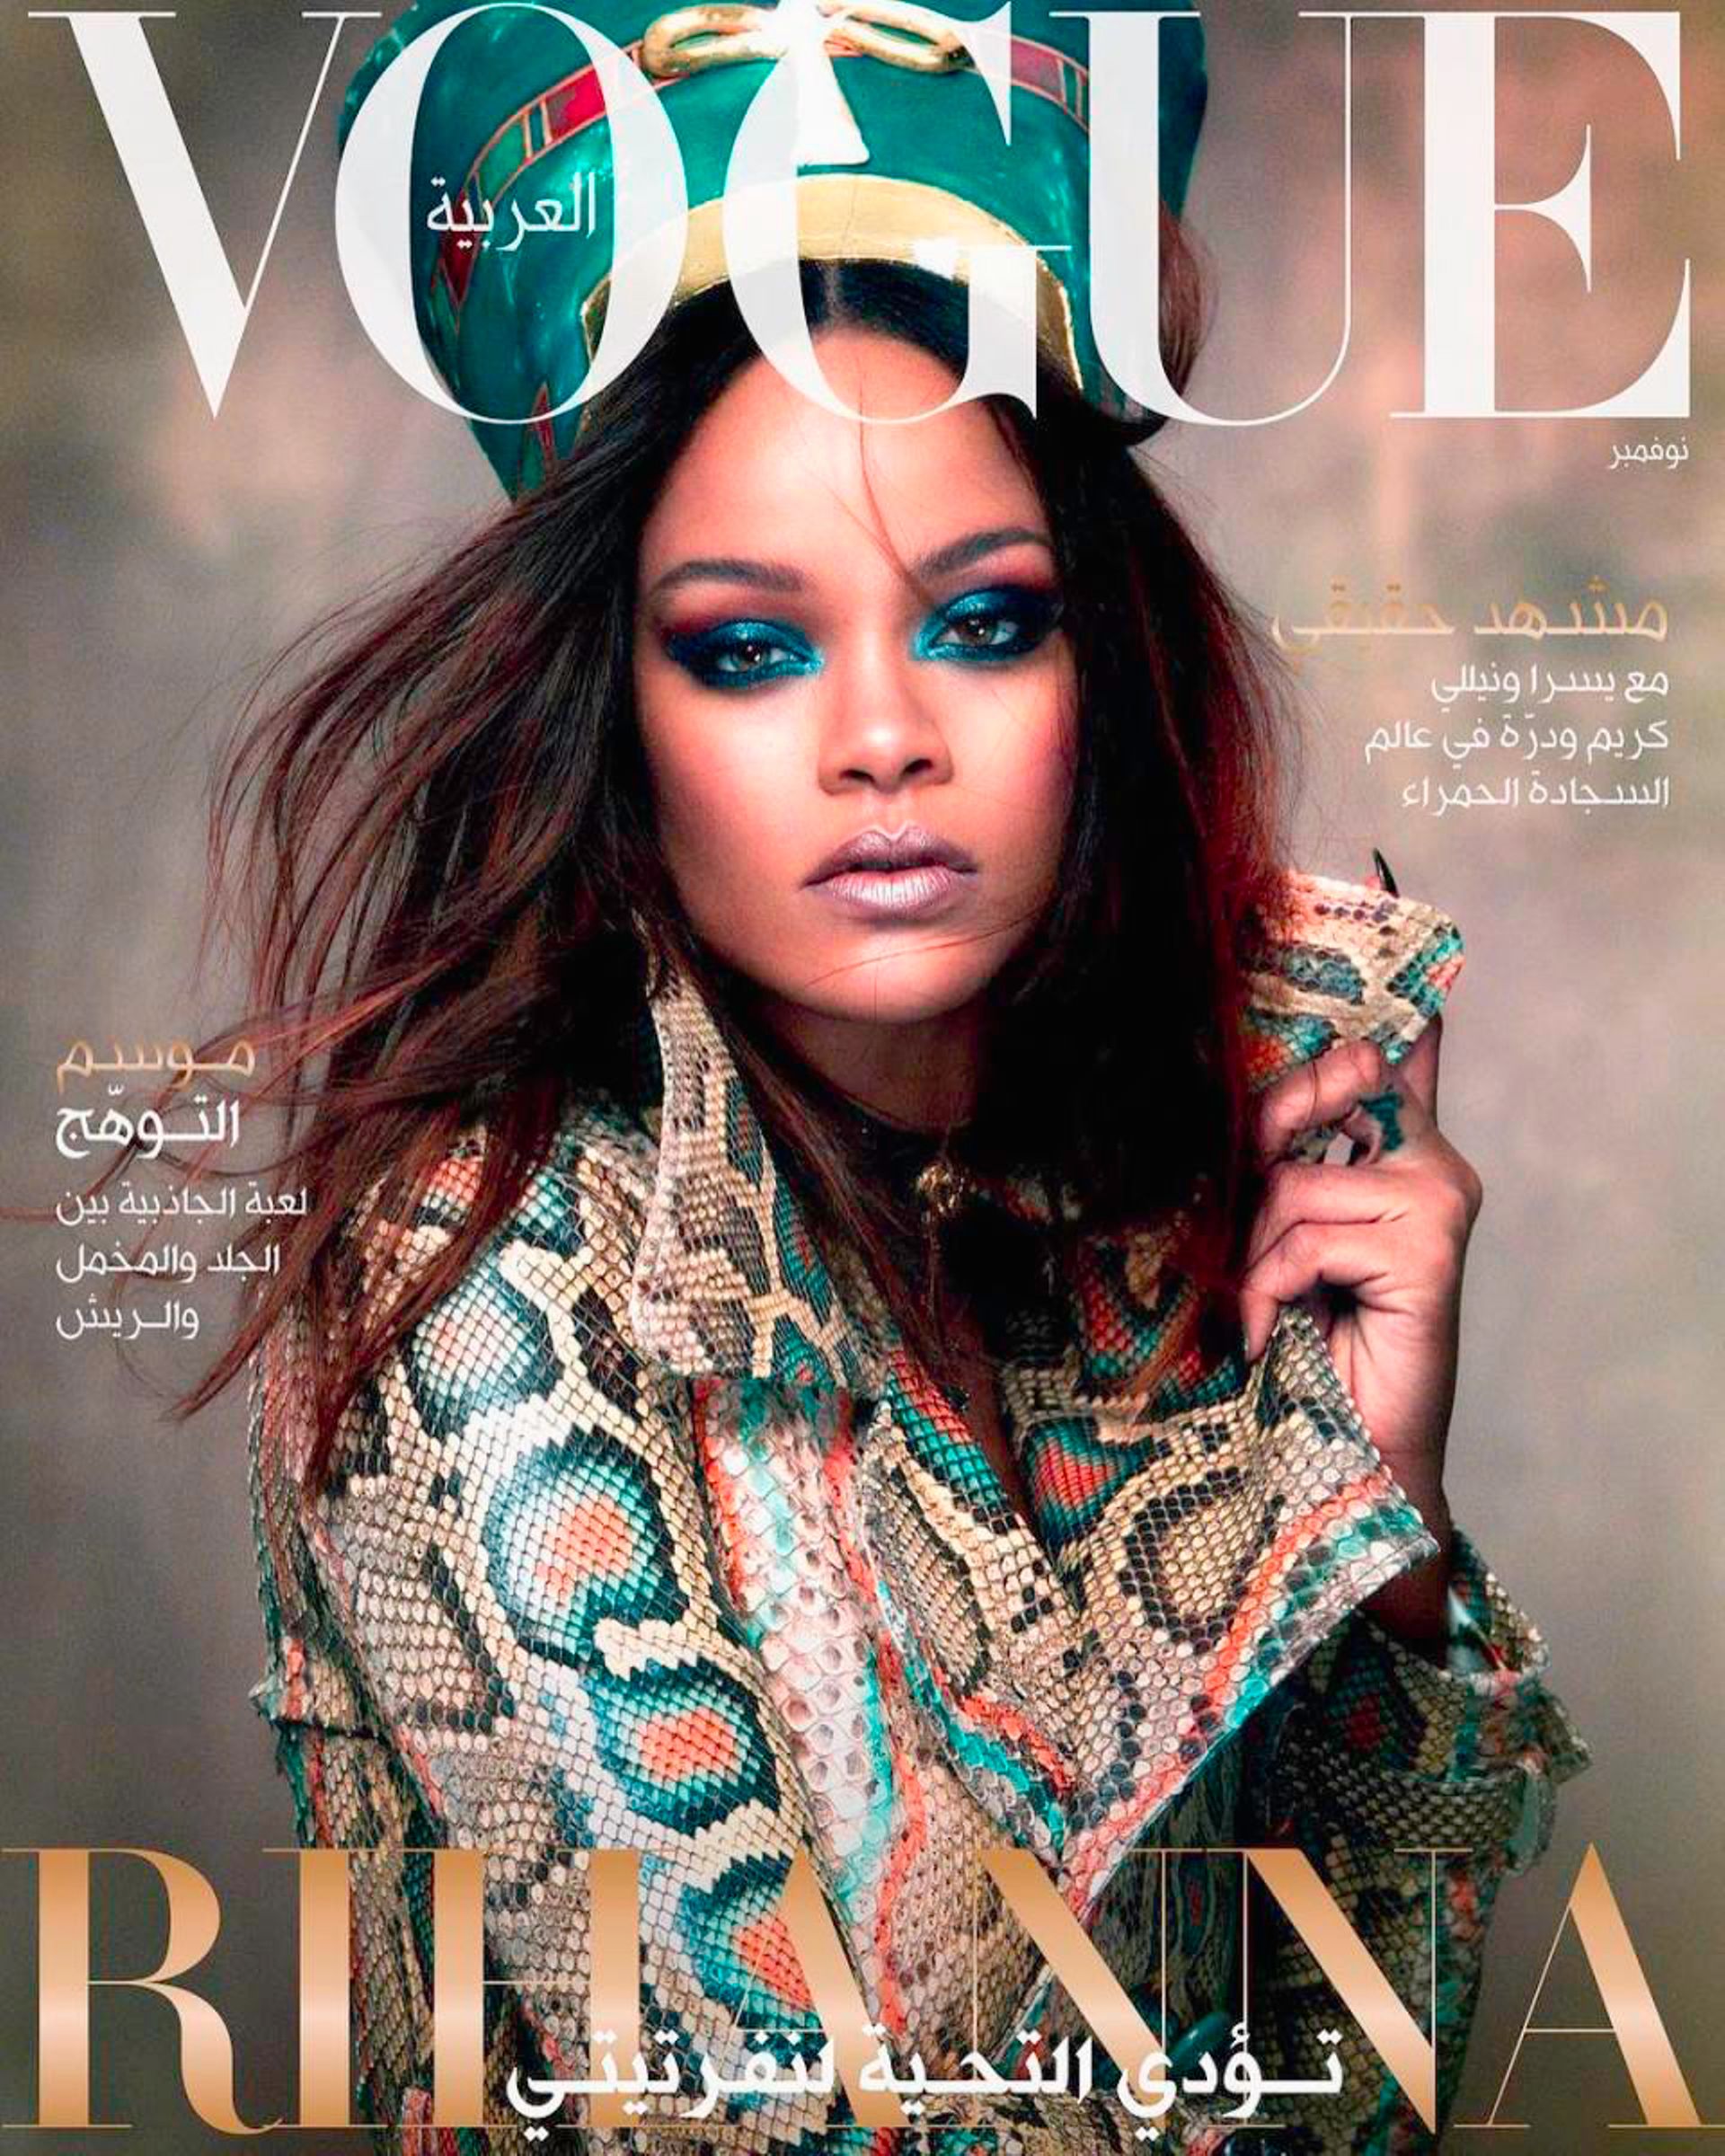 En 2017 Rihanna fait la couverture de Vogue Arabia et " rend hommage à Néfertiti " titre le magazine.